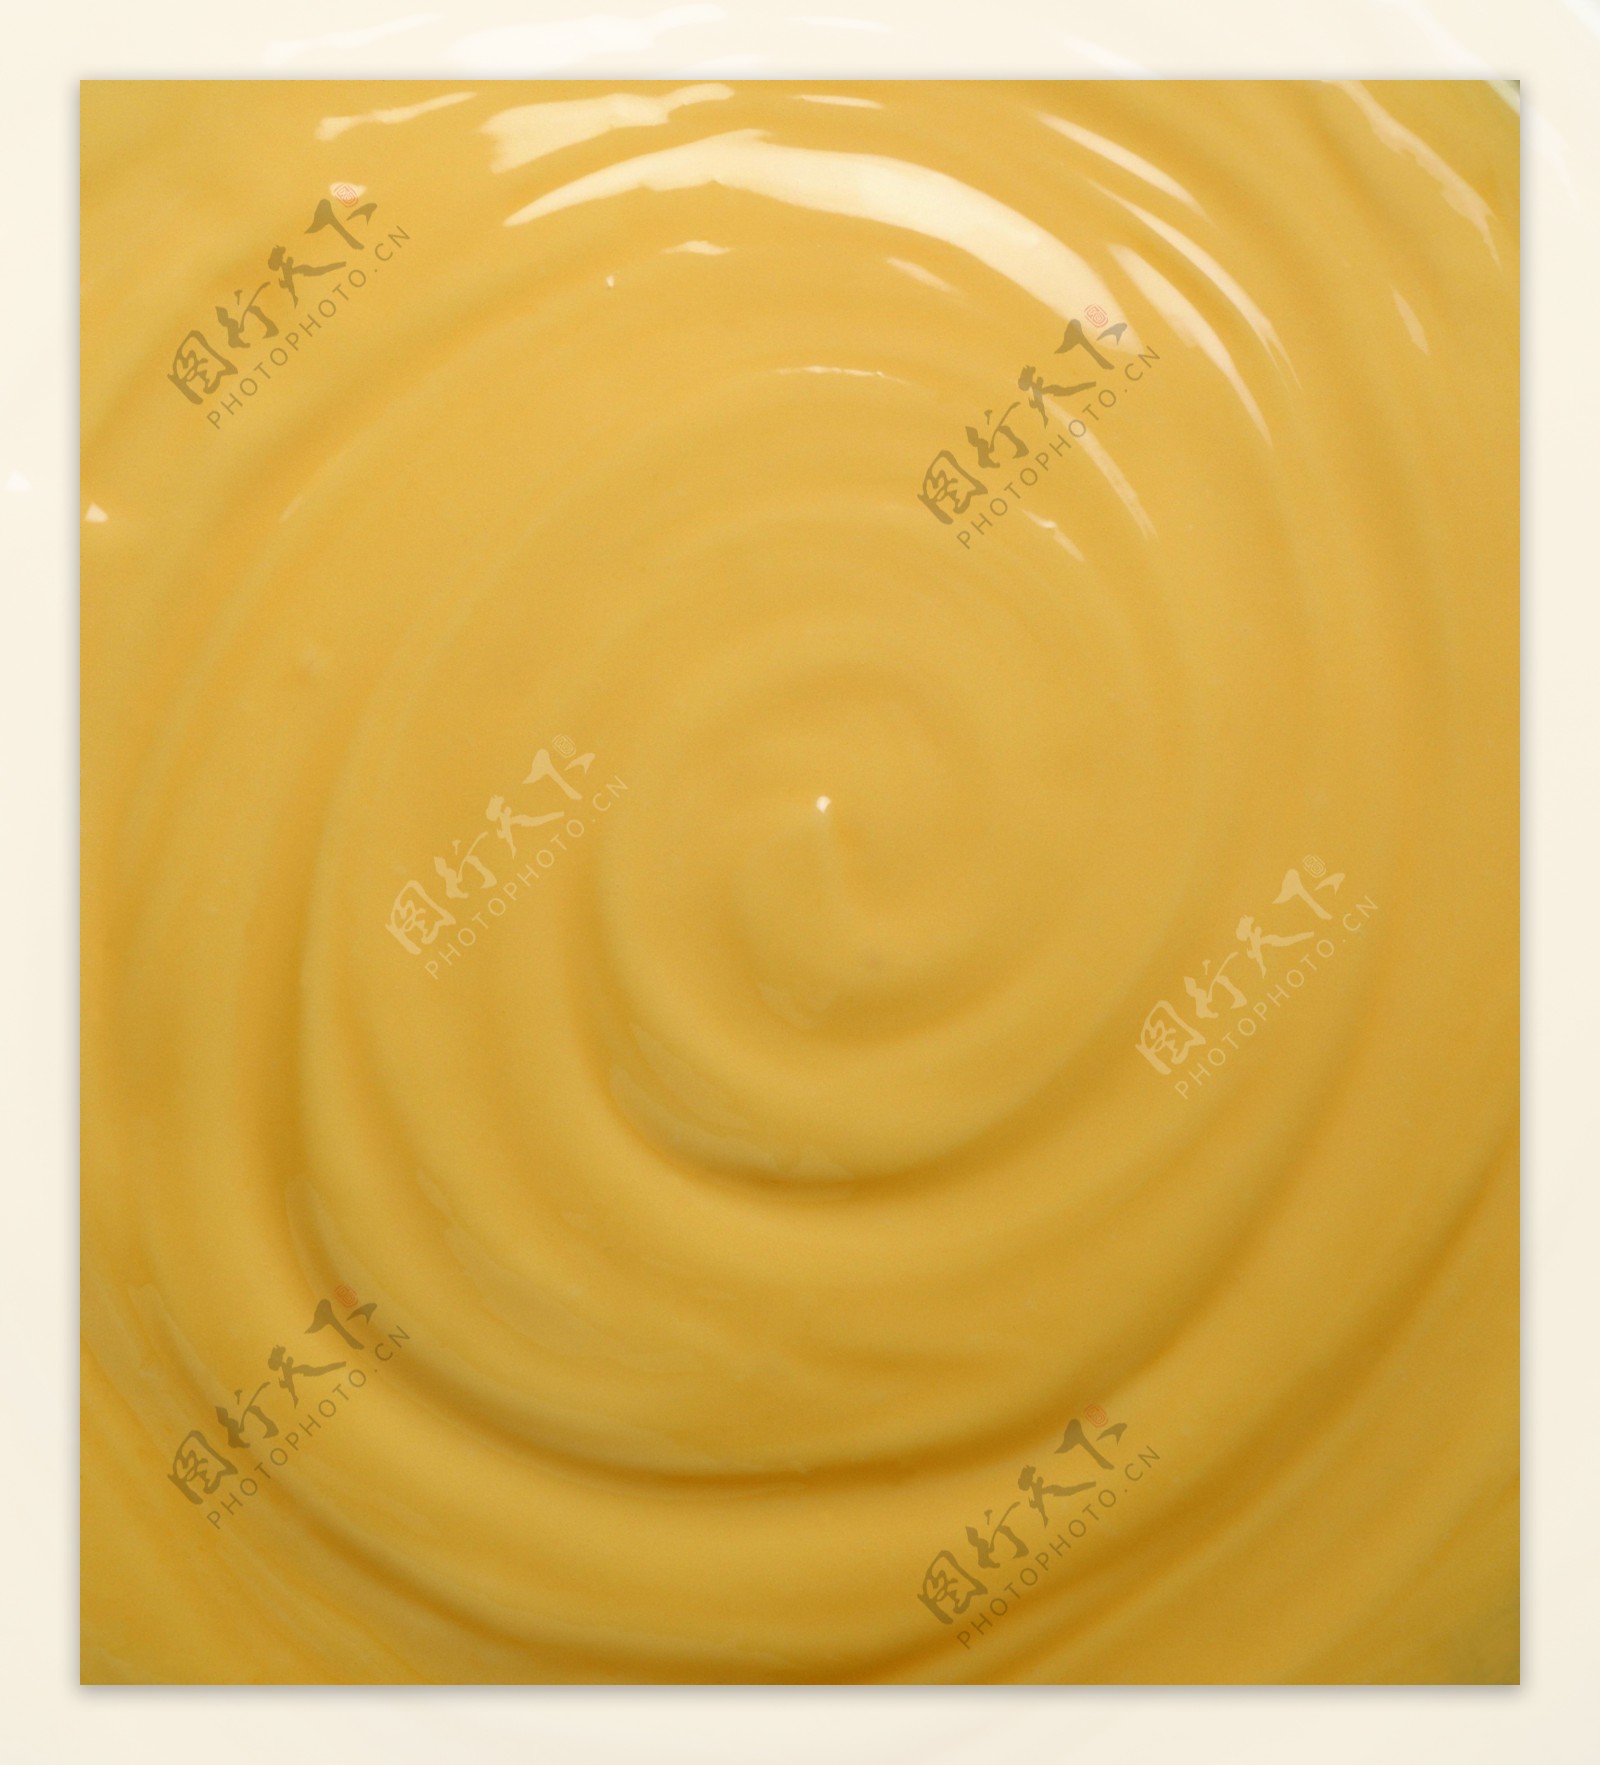 黄色奶油背景图片